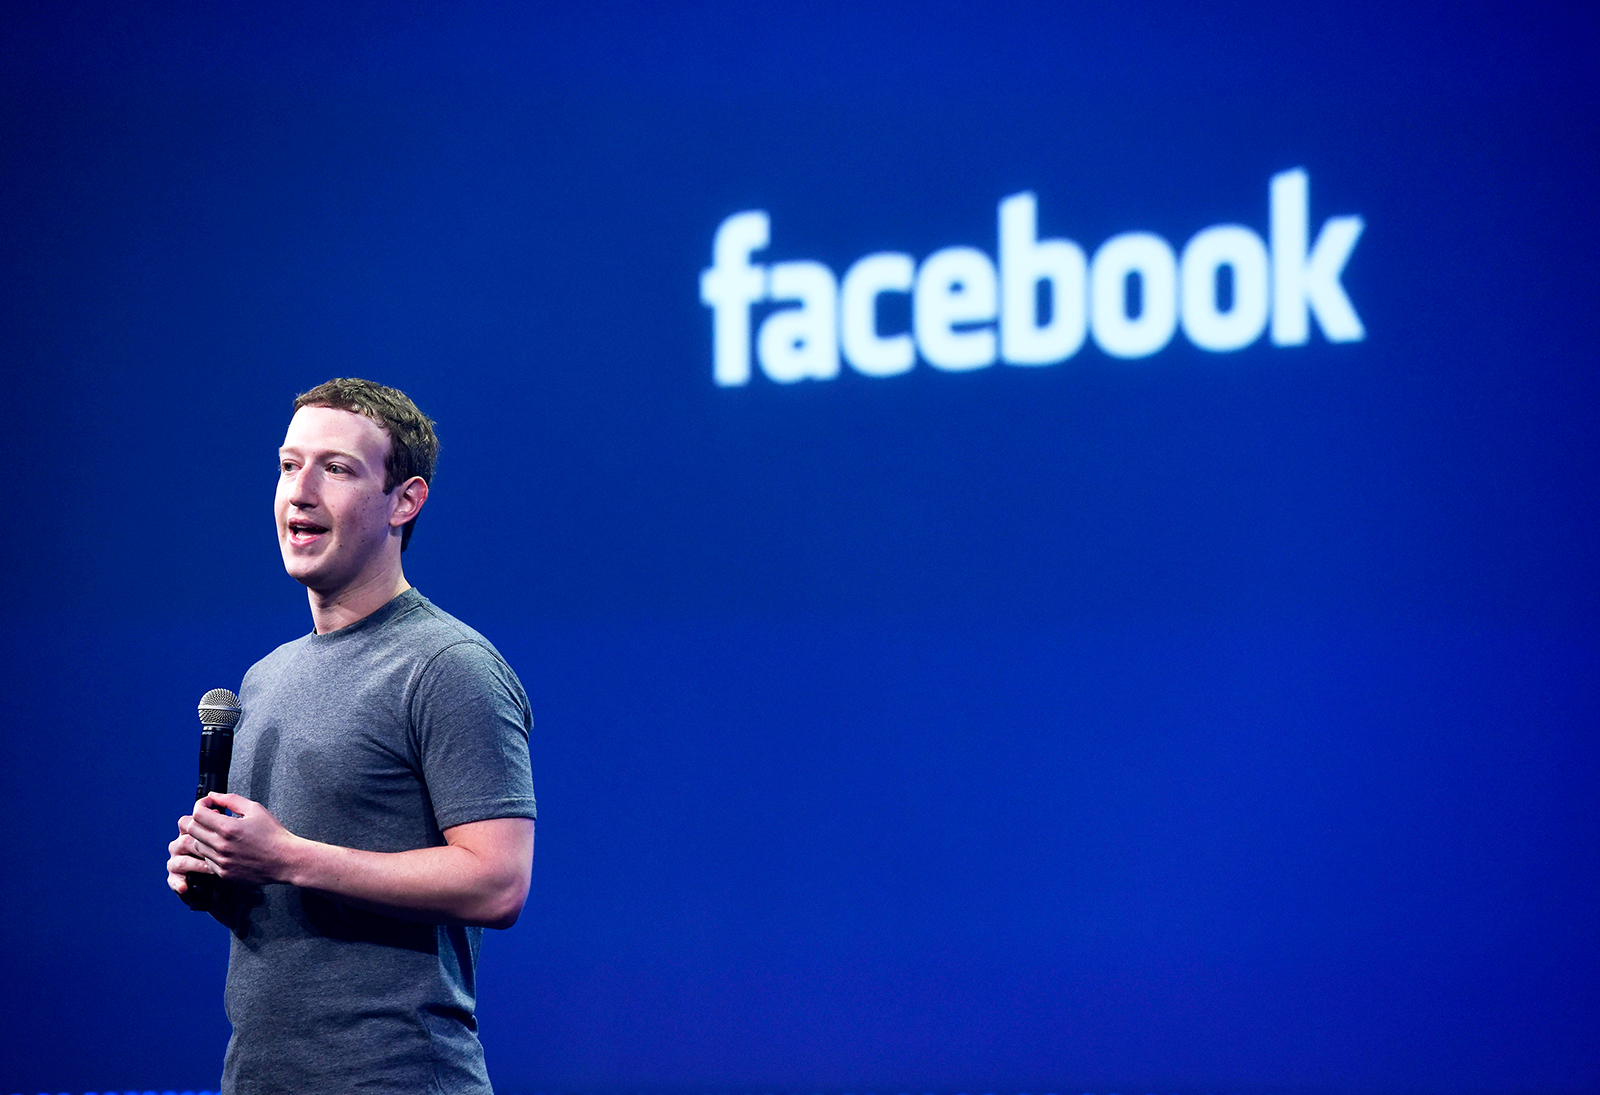 رئيس فيسبوك يجتمع مع محافظين أمريكيين بشأن جدل حول تحيز سياسي